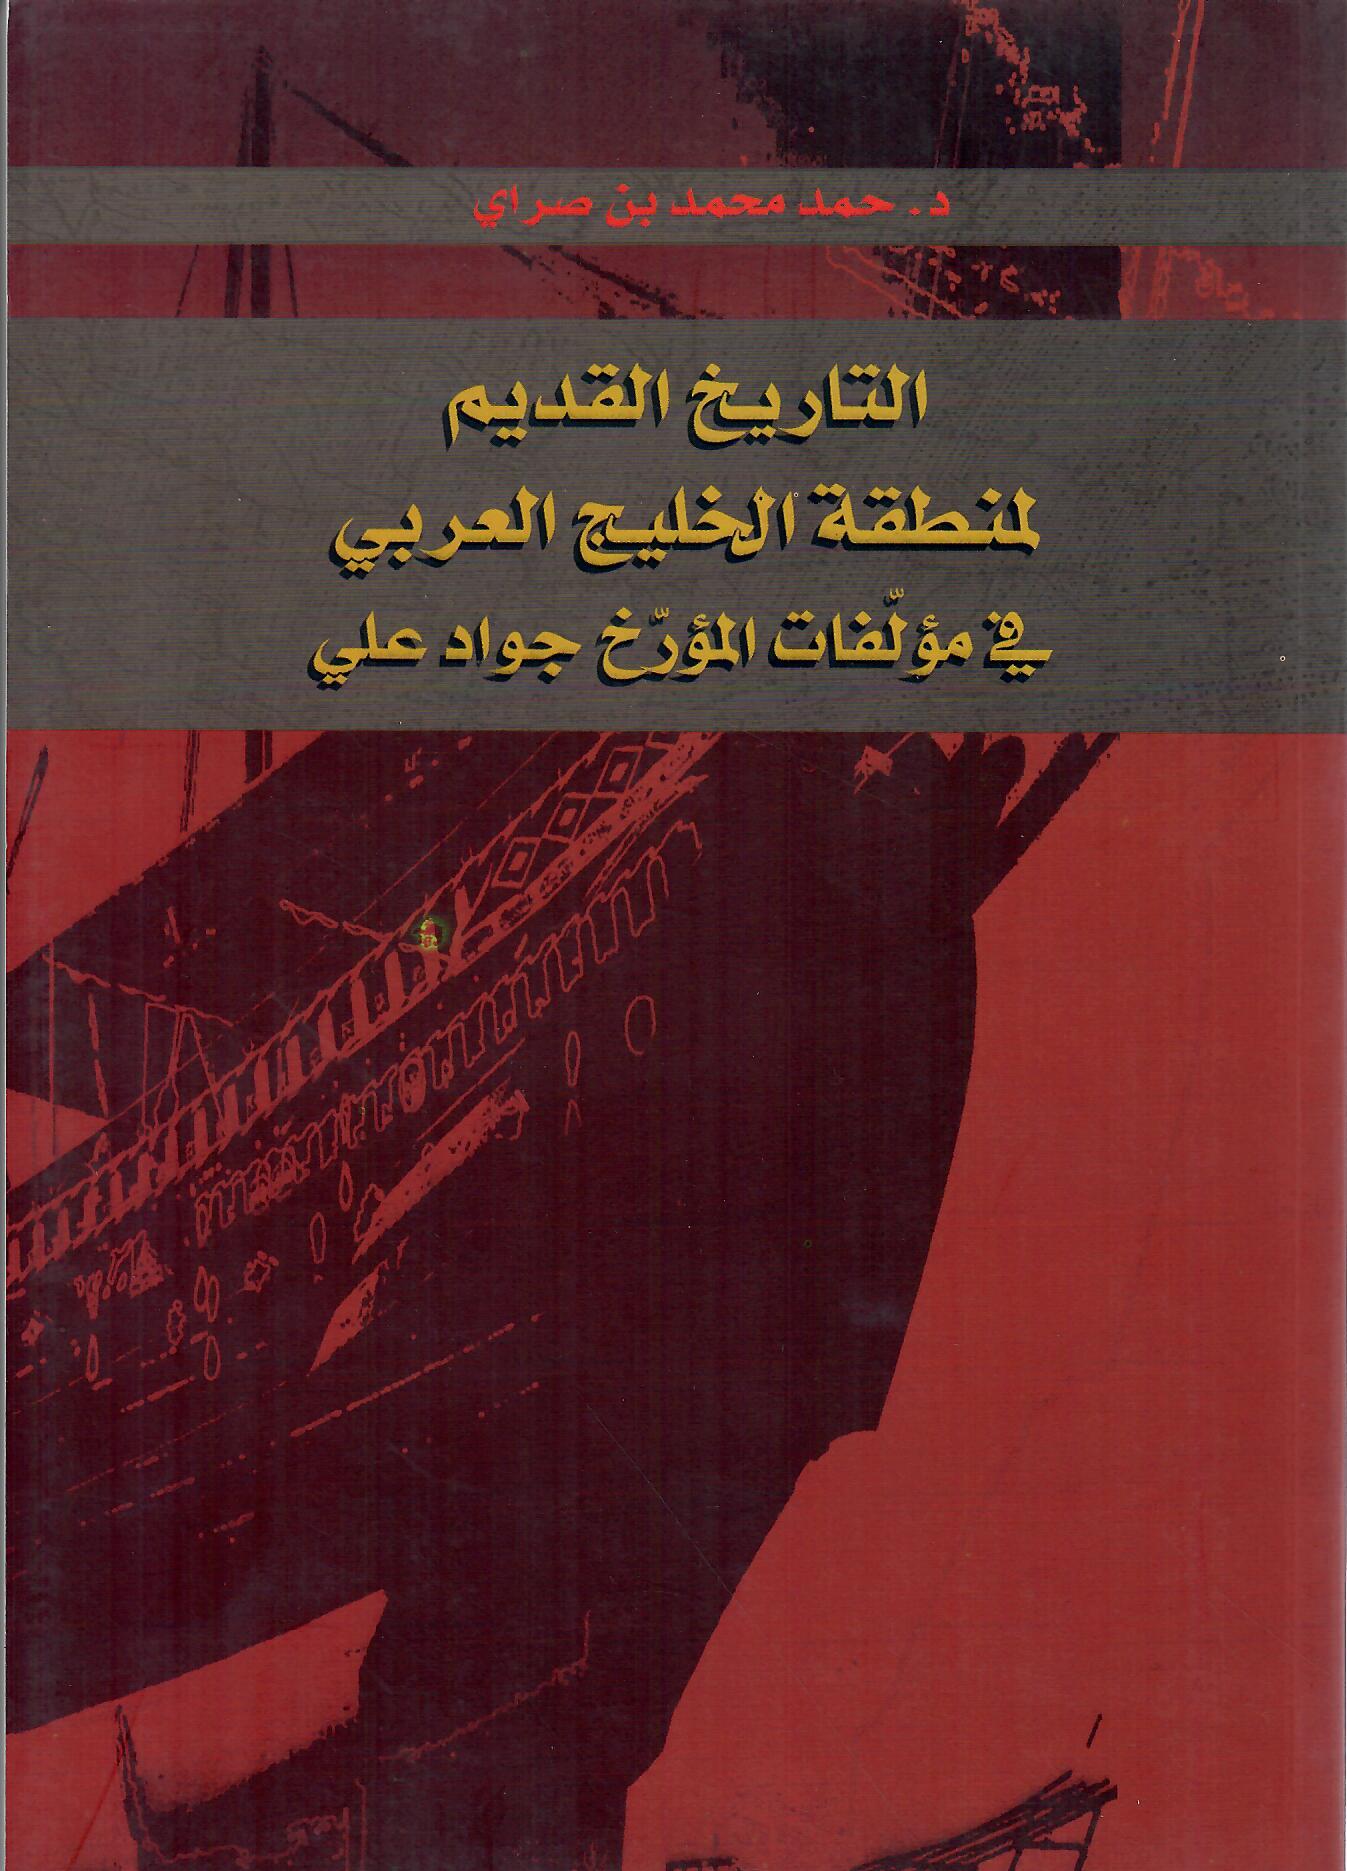 التاريخ القديم لمنطقة الخليج العربي في مؤلفات المؤرخ جواد علي